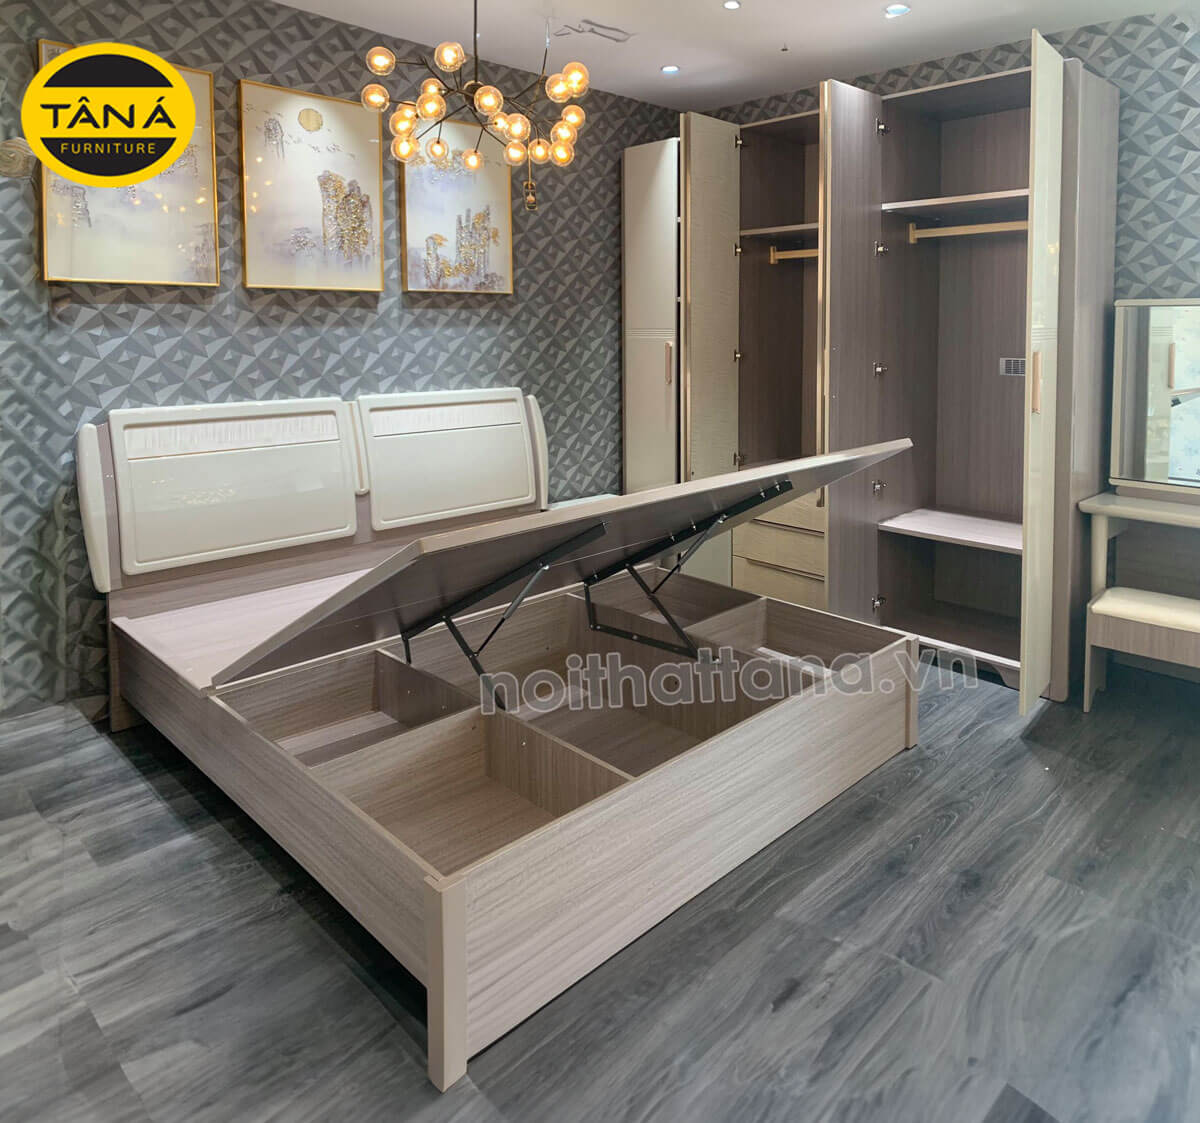 Bộ giường tủ hiện đại nhập khẩu đài loan TA-2015